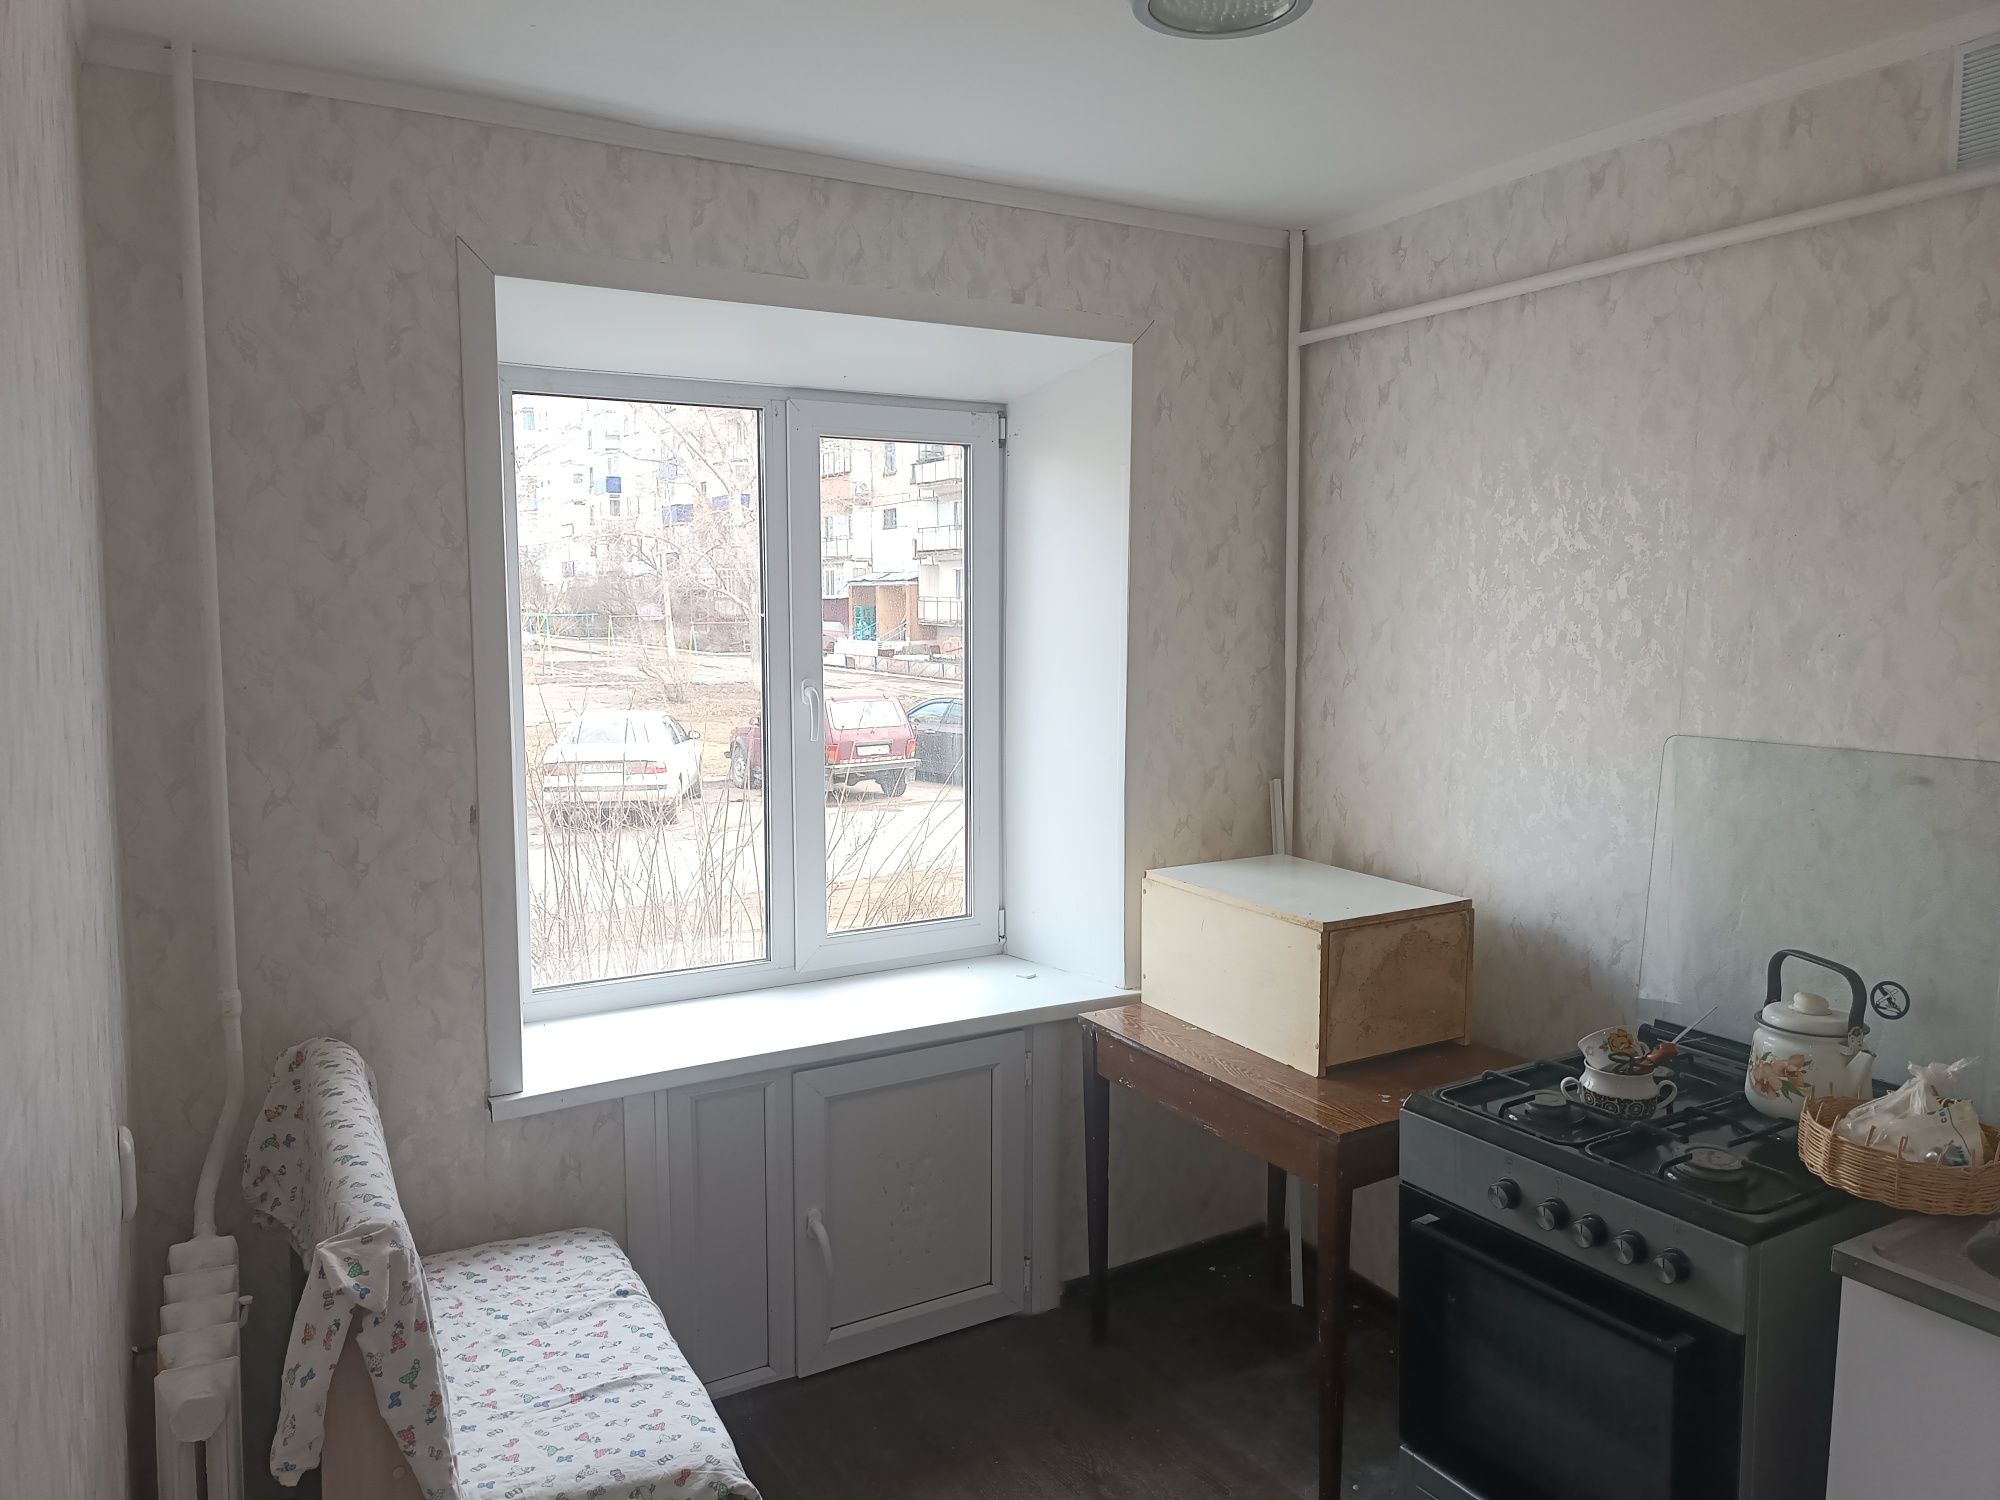 Продам однокомнатную квартиру г.Лисковск 5-24 без балкона.